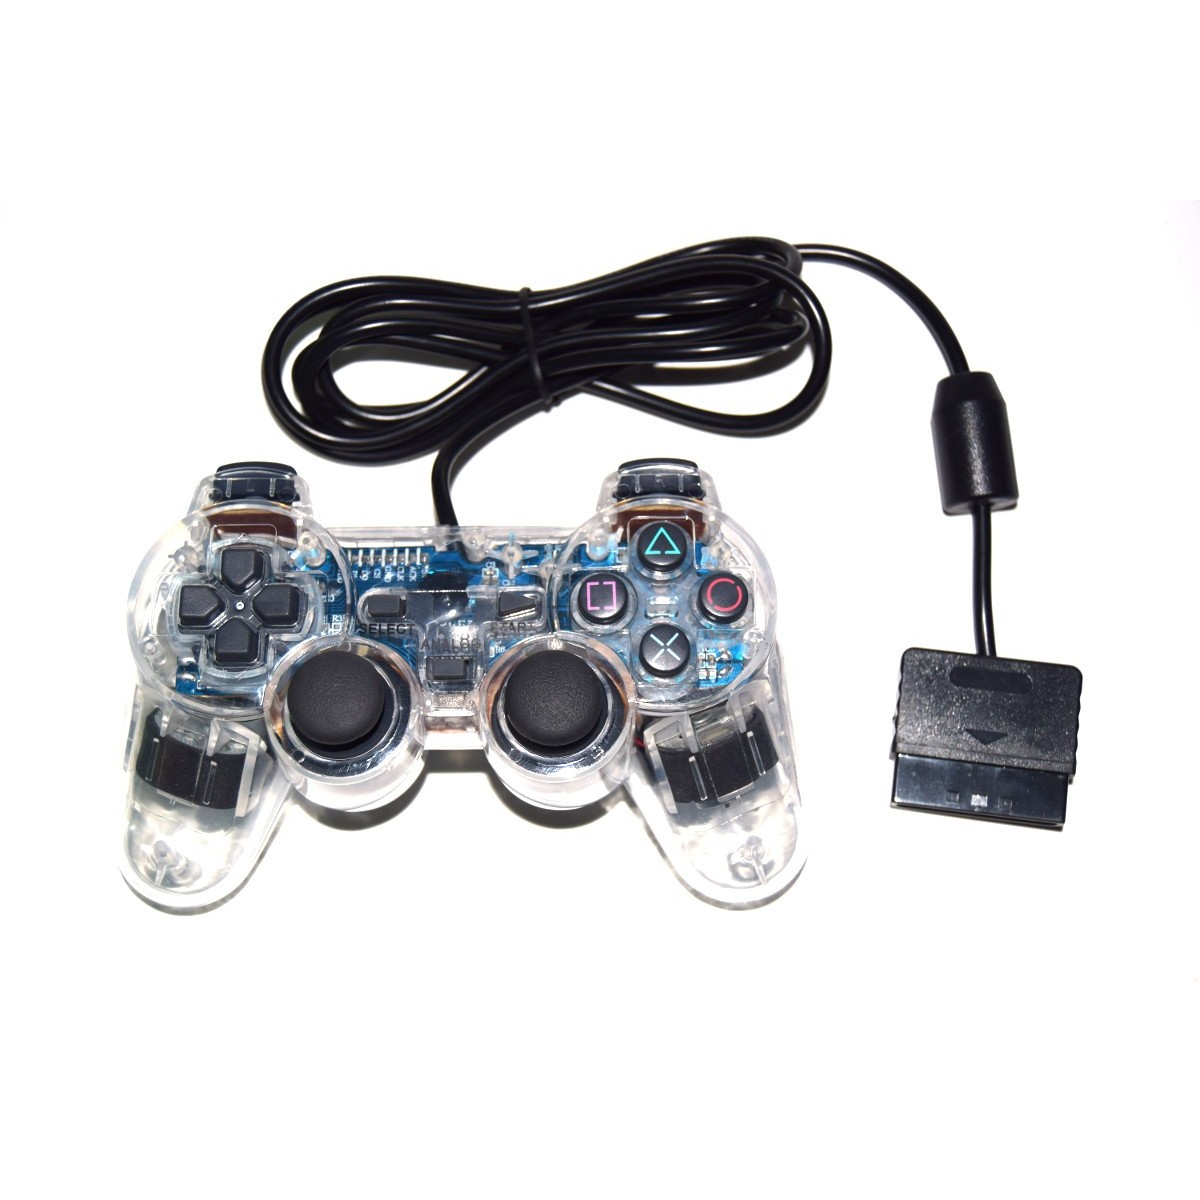 Mando Playstation/Playstation 2 compatible transparente